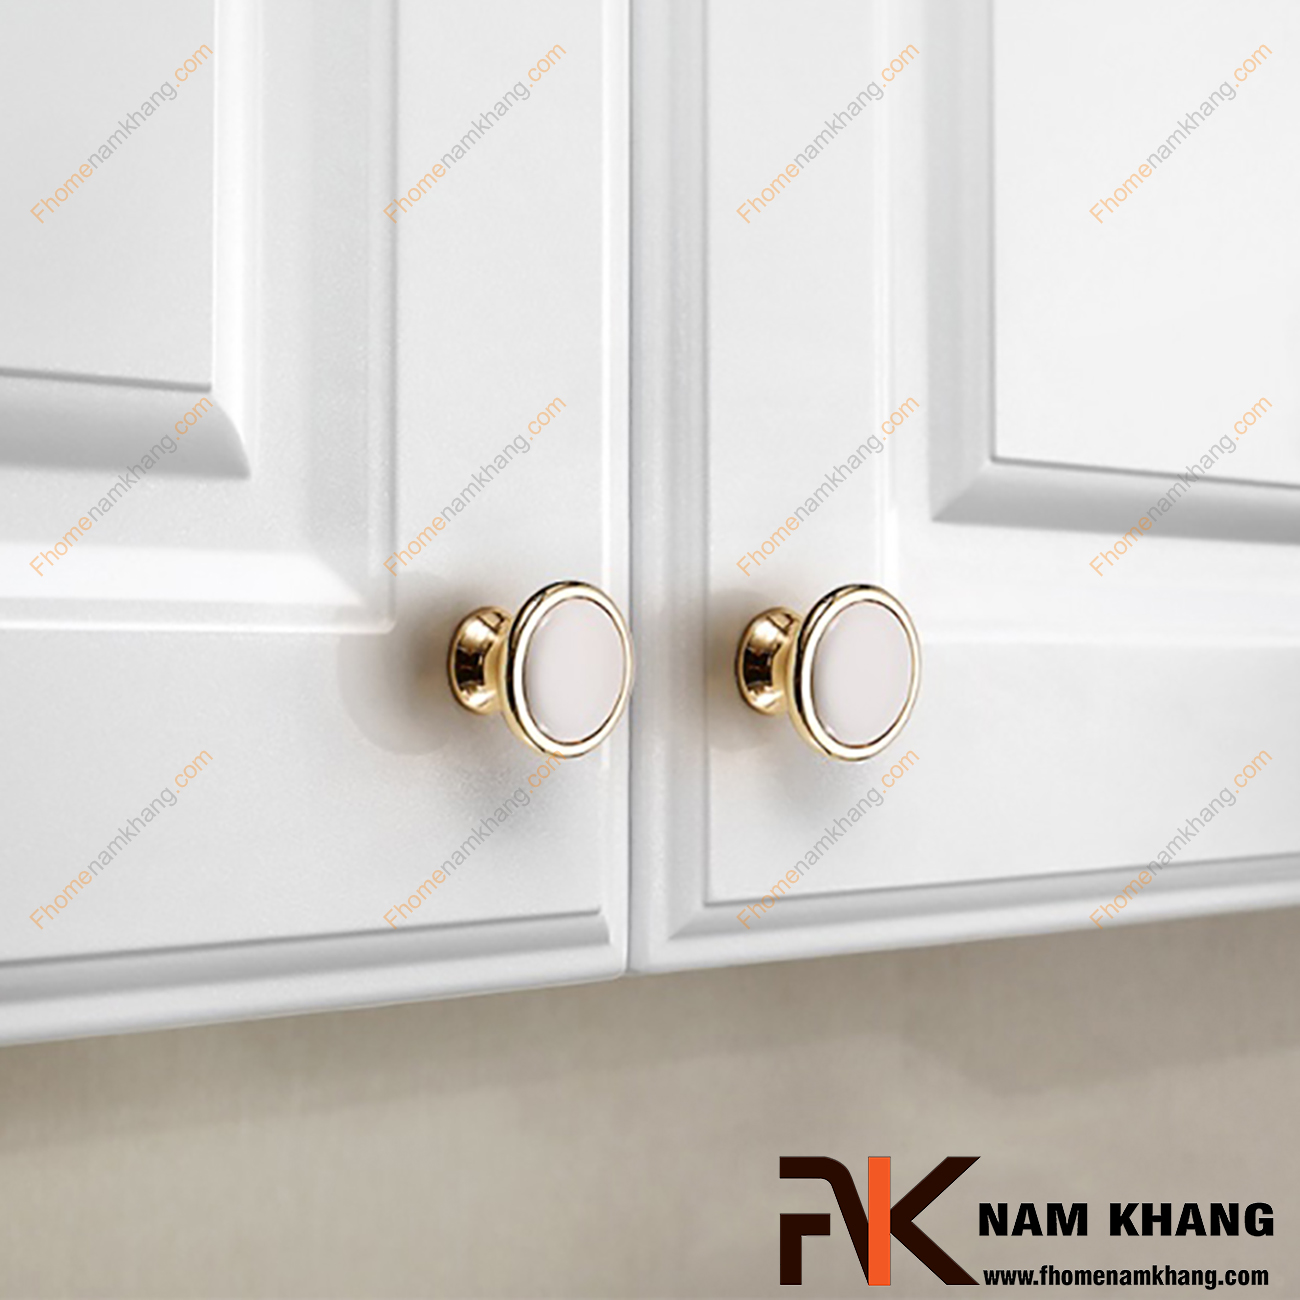 Núm cửa tủ tròn bằng sứ trắng viền vàng NK020 có thiết kế khá đơn giản từ hợp kim mạ vàng bọc quanh sứ trắng bóng cao cấp. Khá đơn giản nhưng lại toát lên vẻ ngoài tinh tế và rất sang trọng .